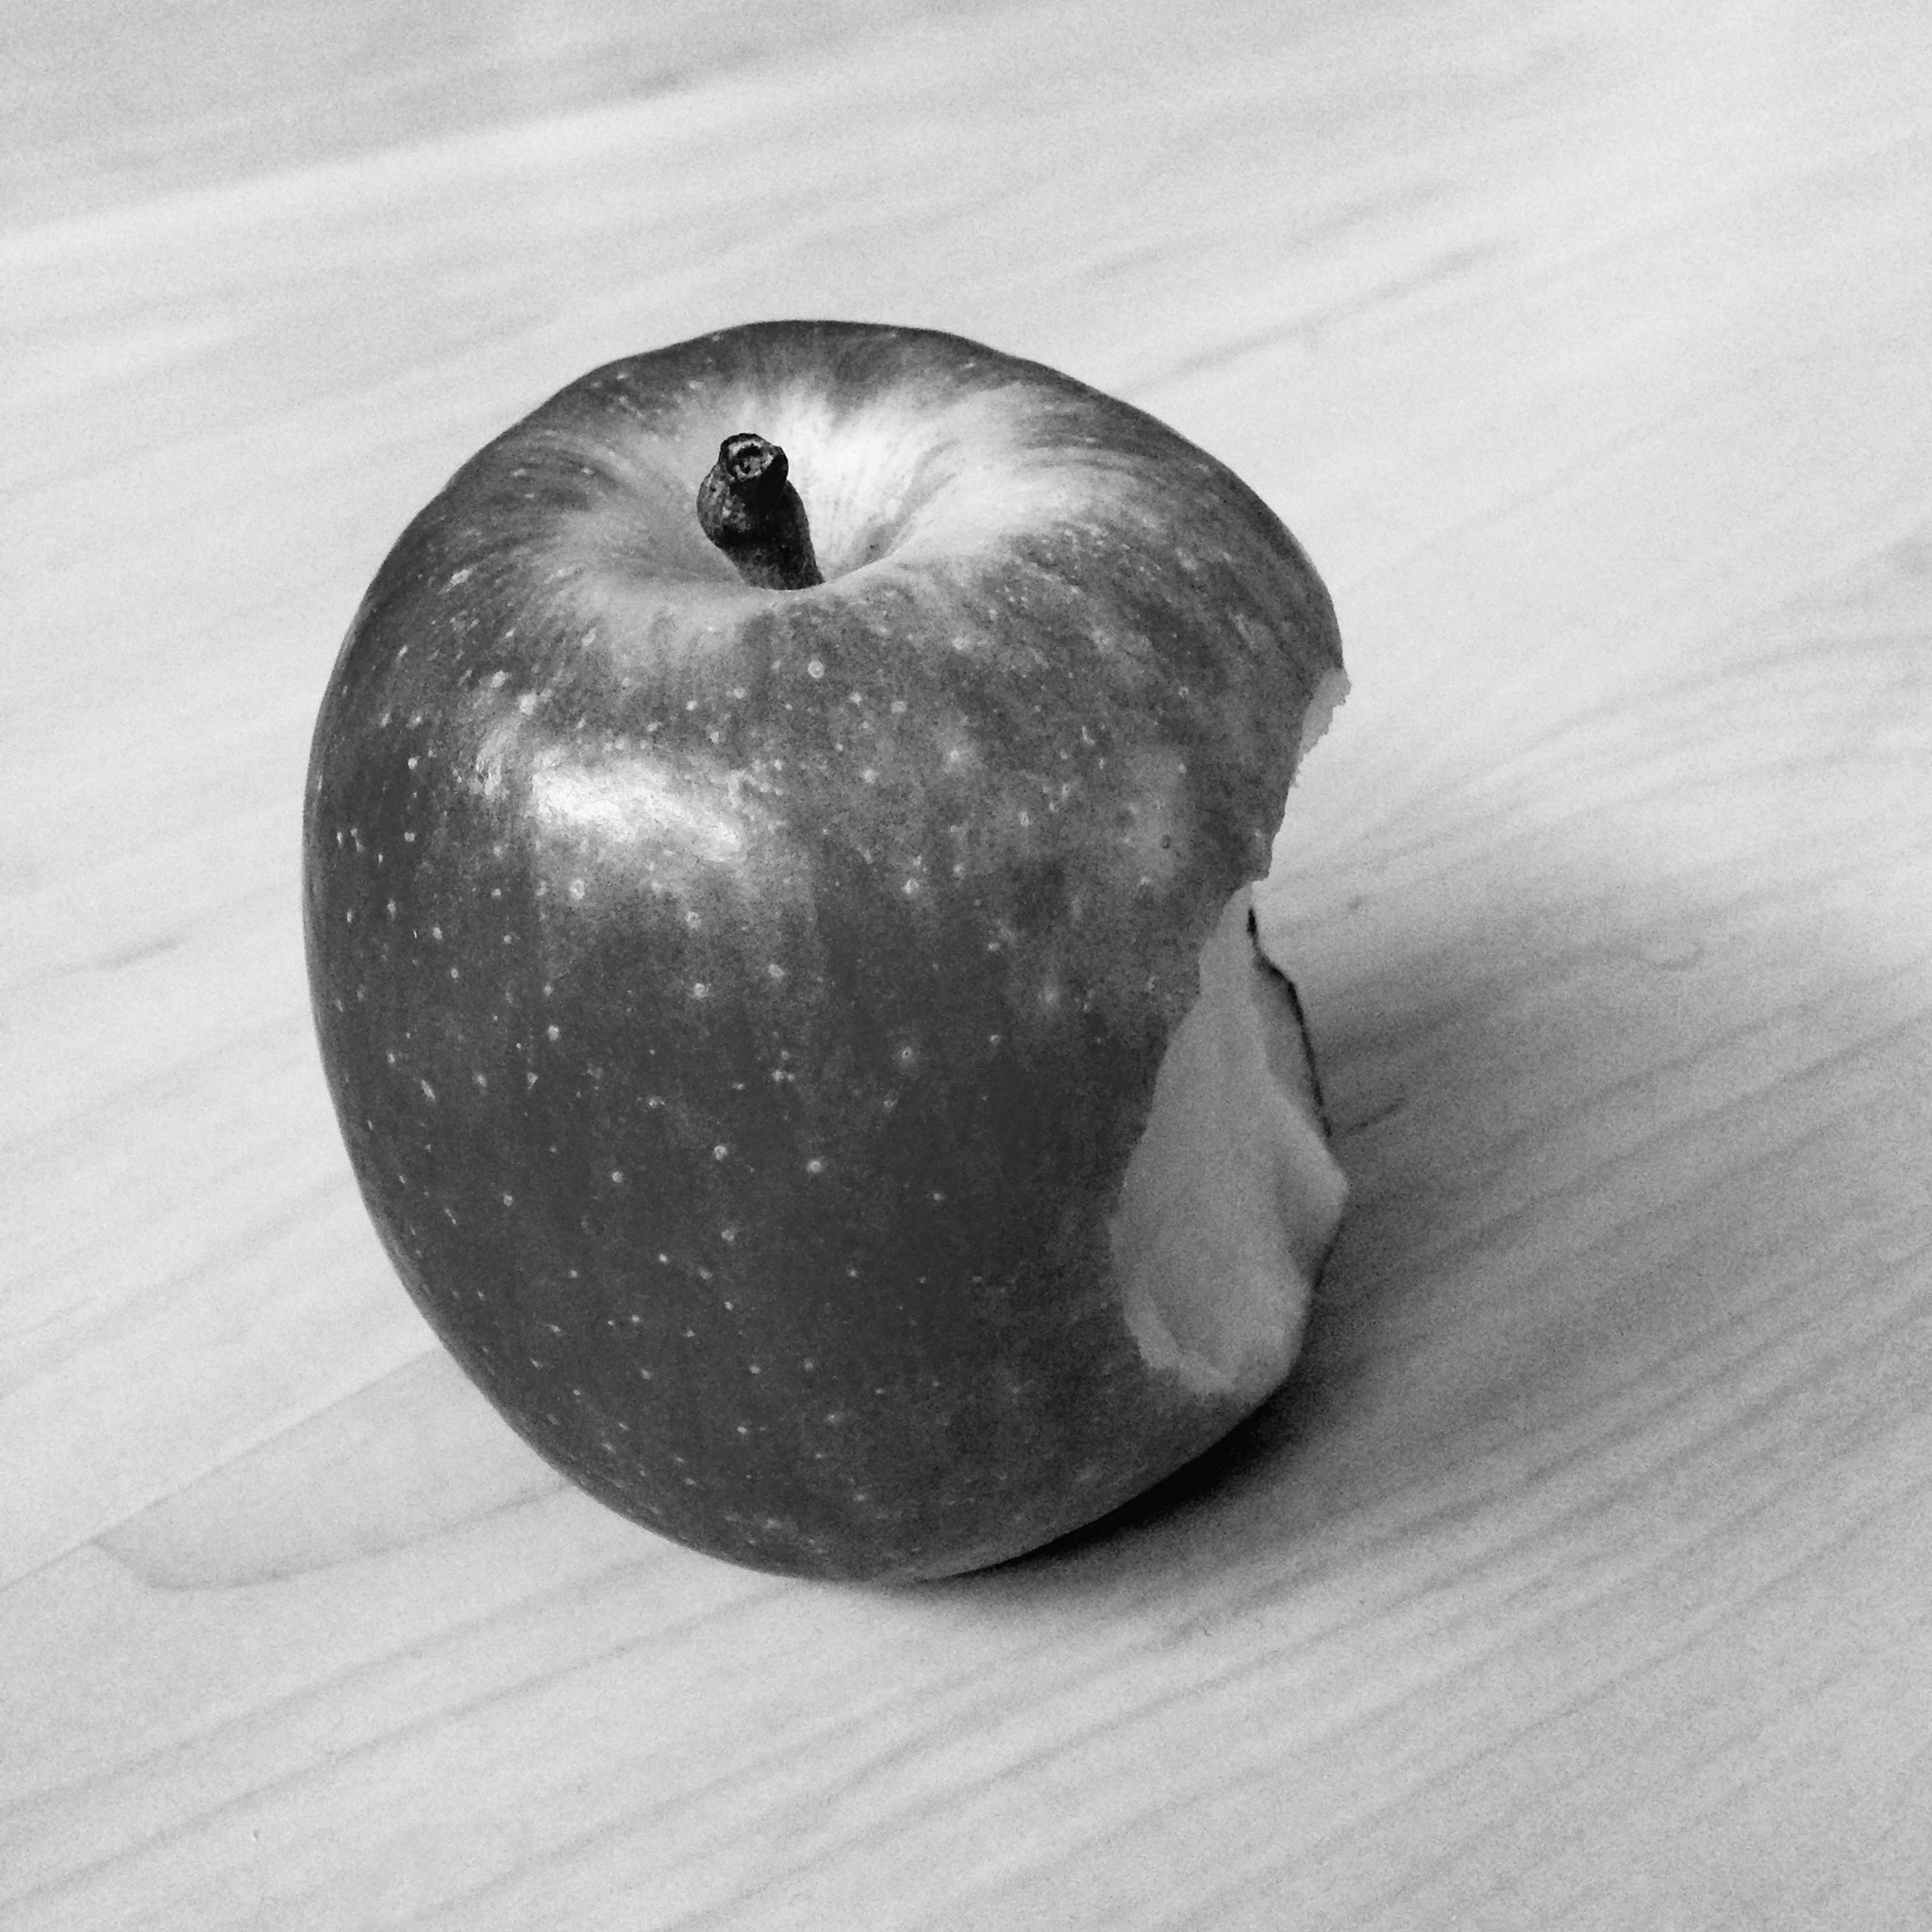 Der Apfel fault